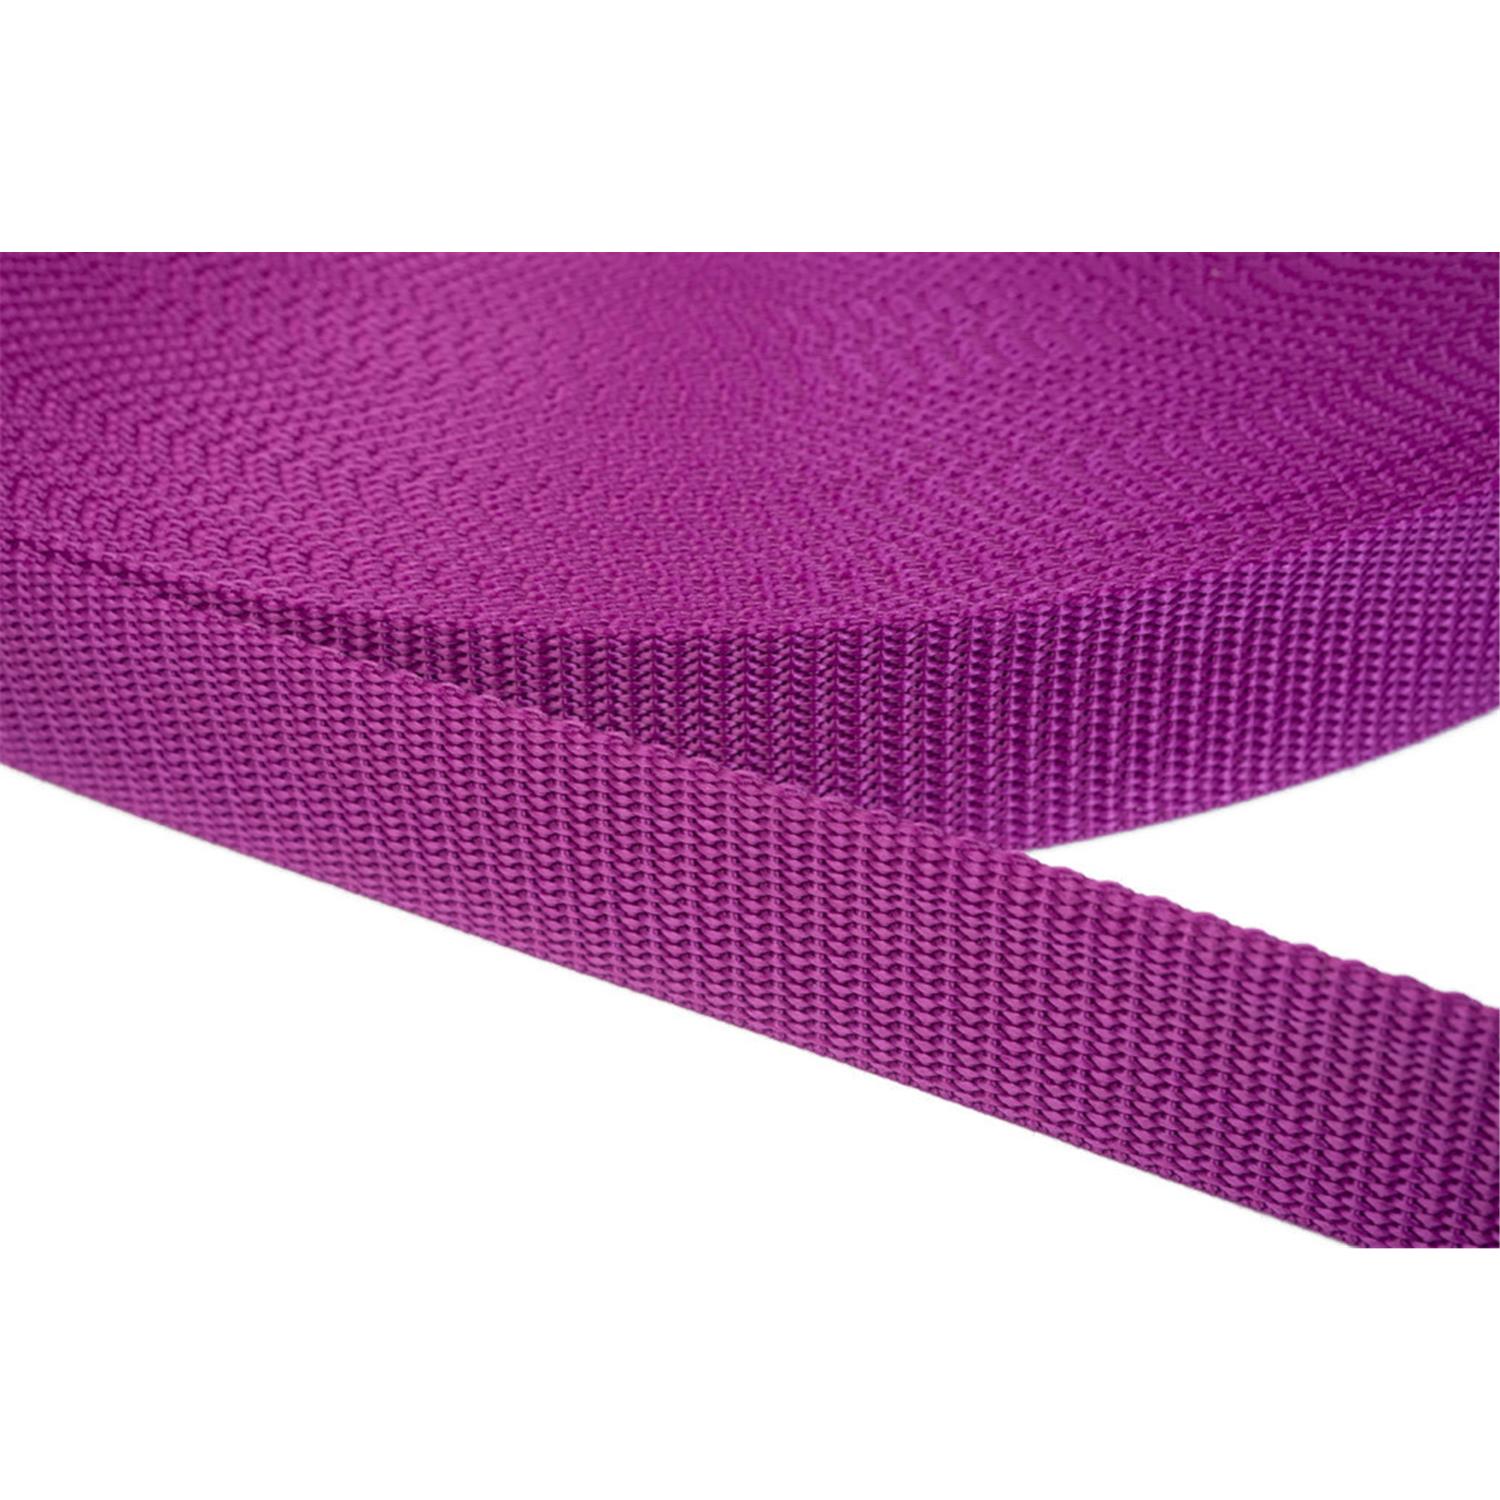 Gurtband 20mm breit aus Polypropylen in 41 Farben 22 - violettrot 50 Meter